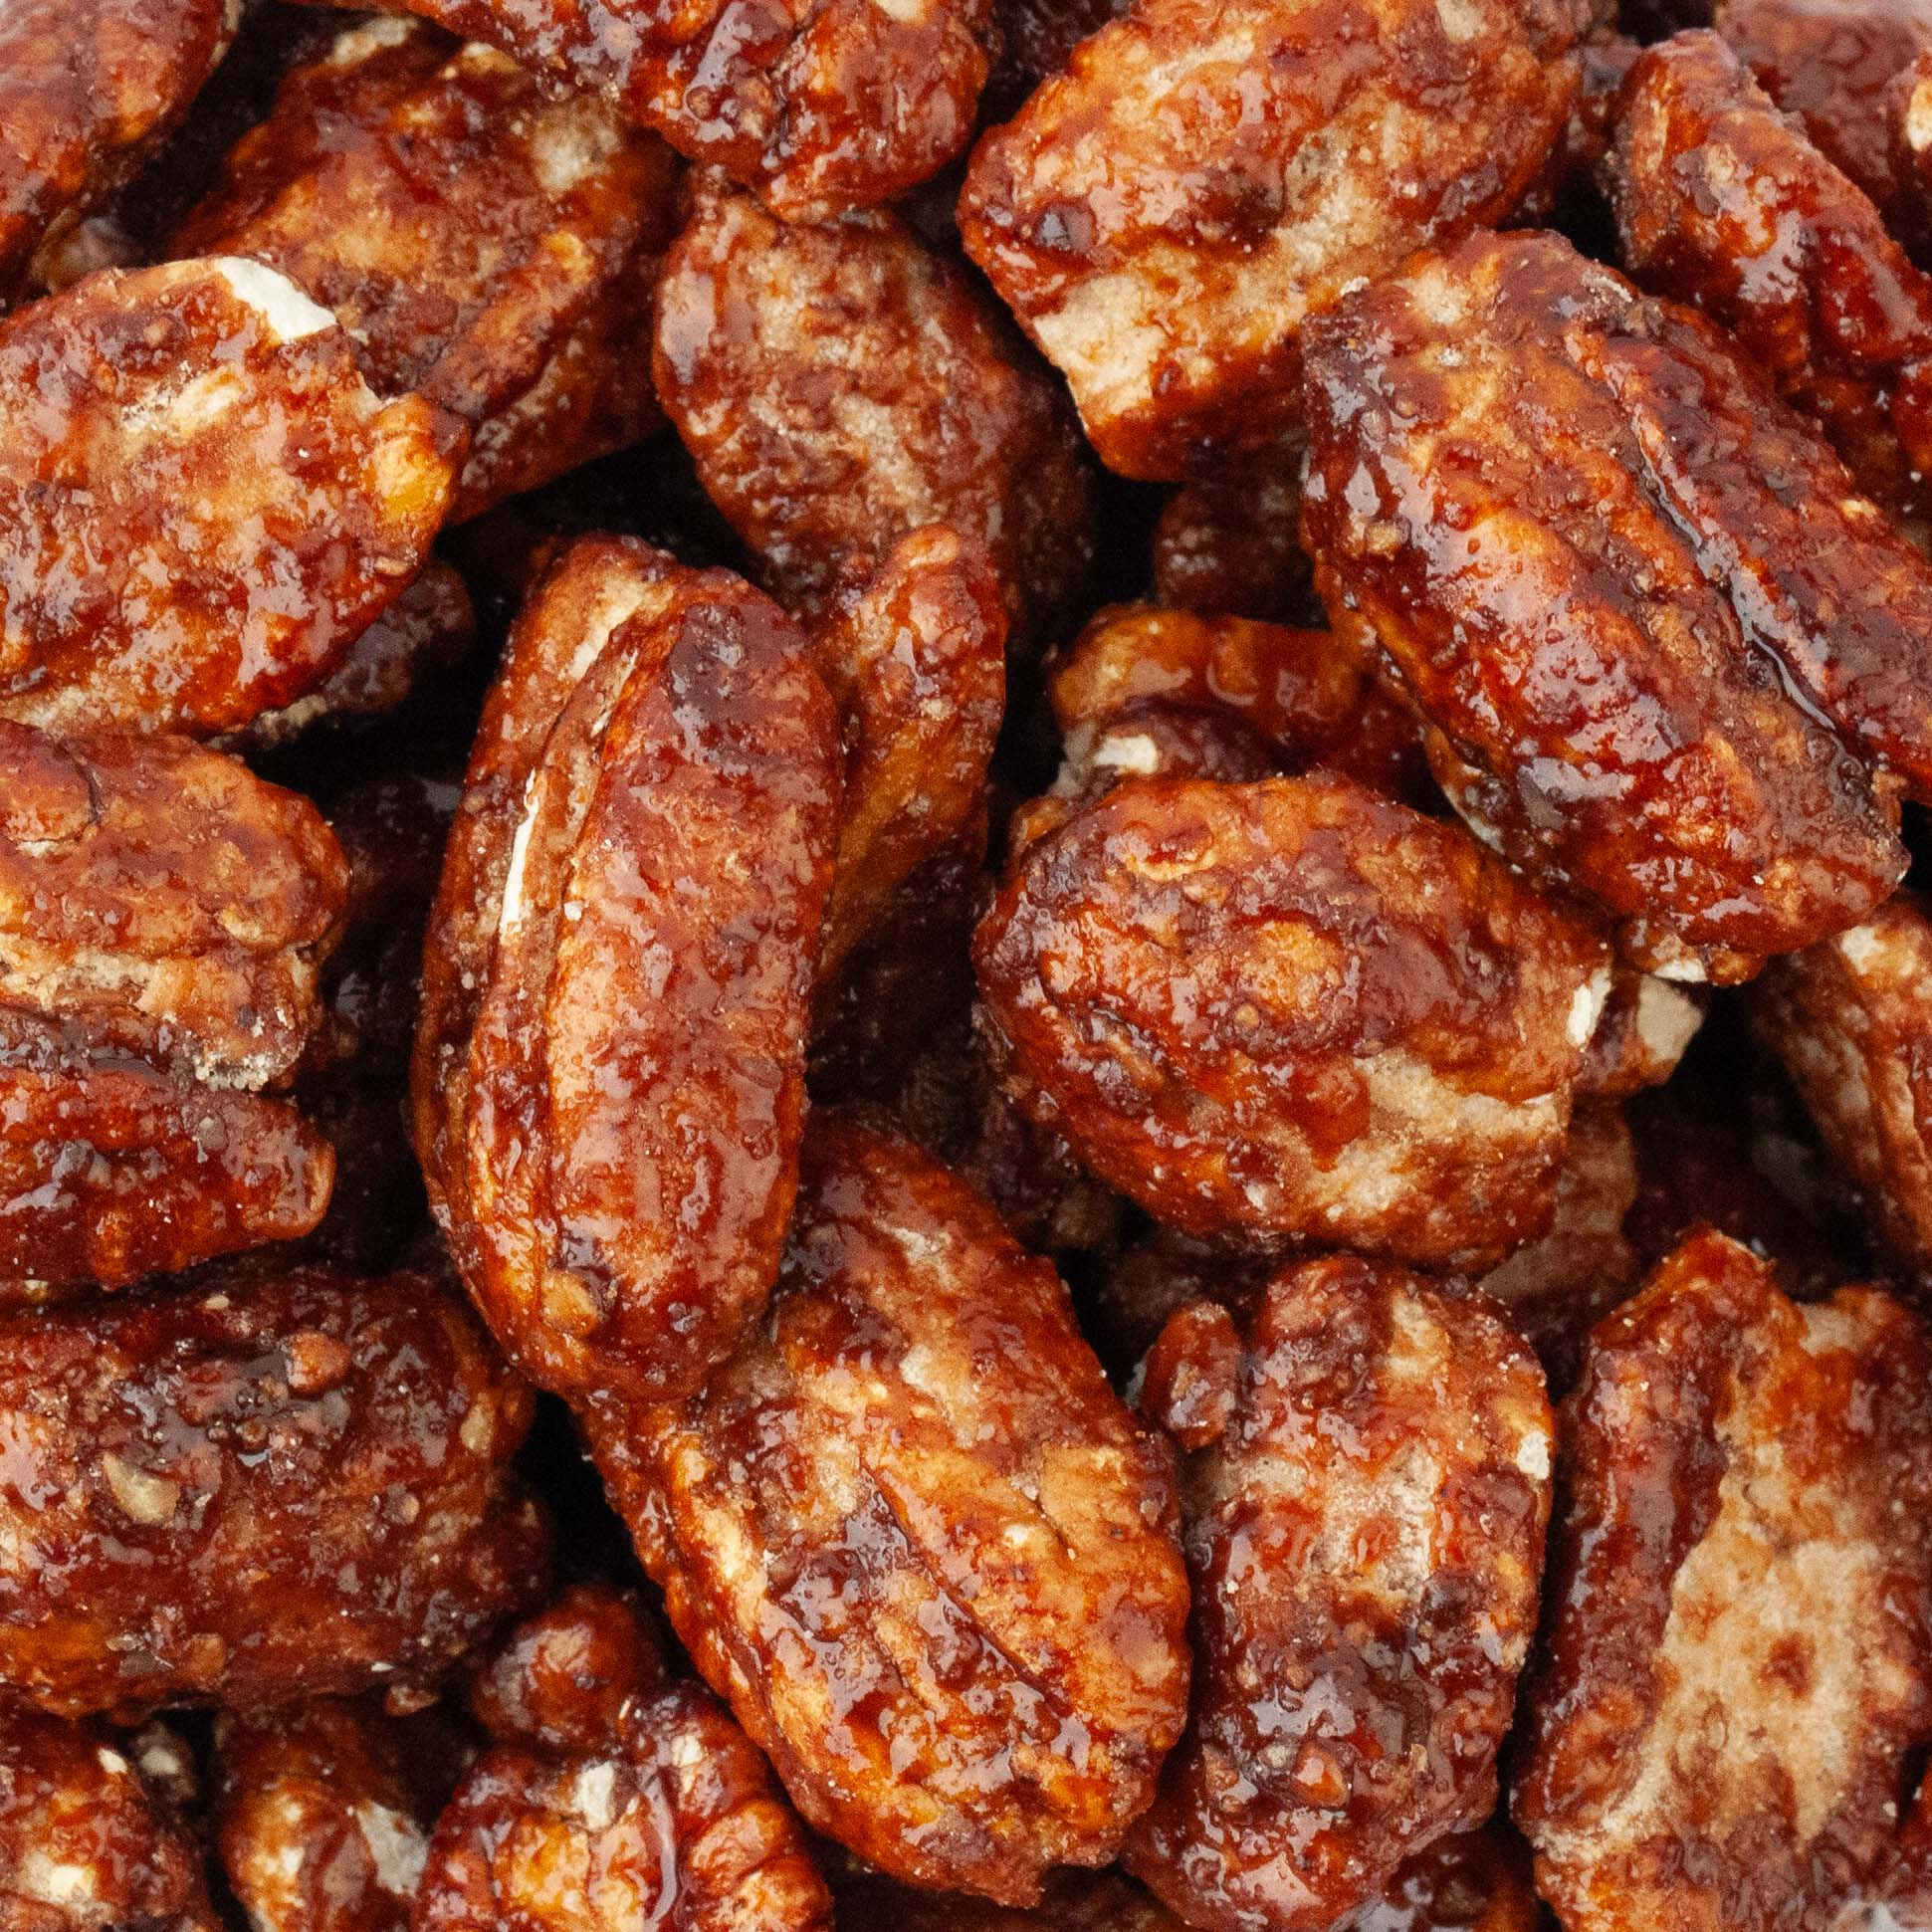 Recette des Candied Pecans : noix de pécan caramélisées